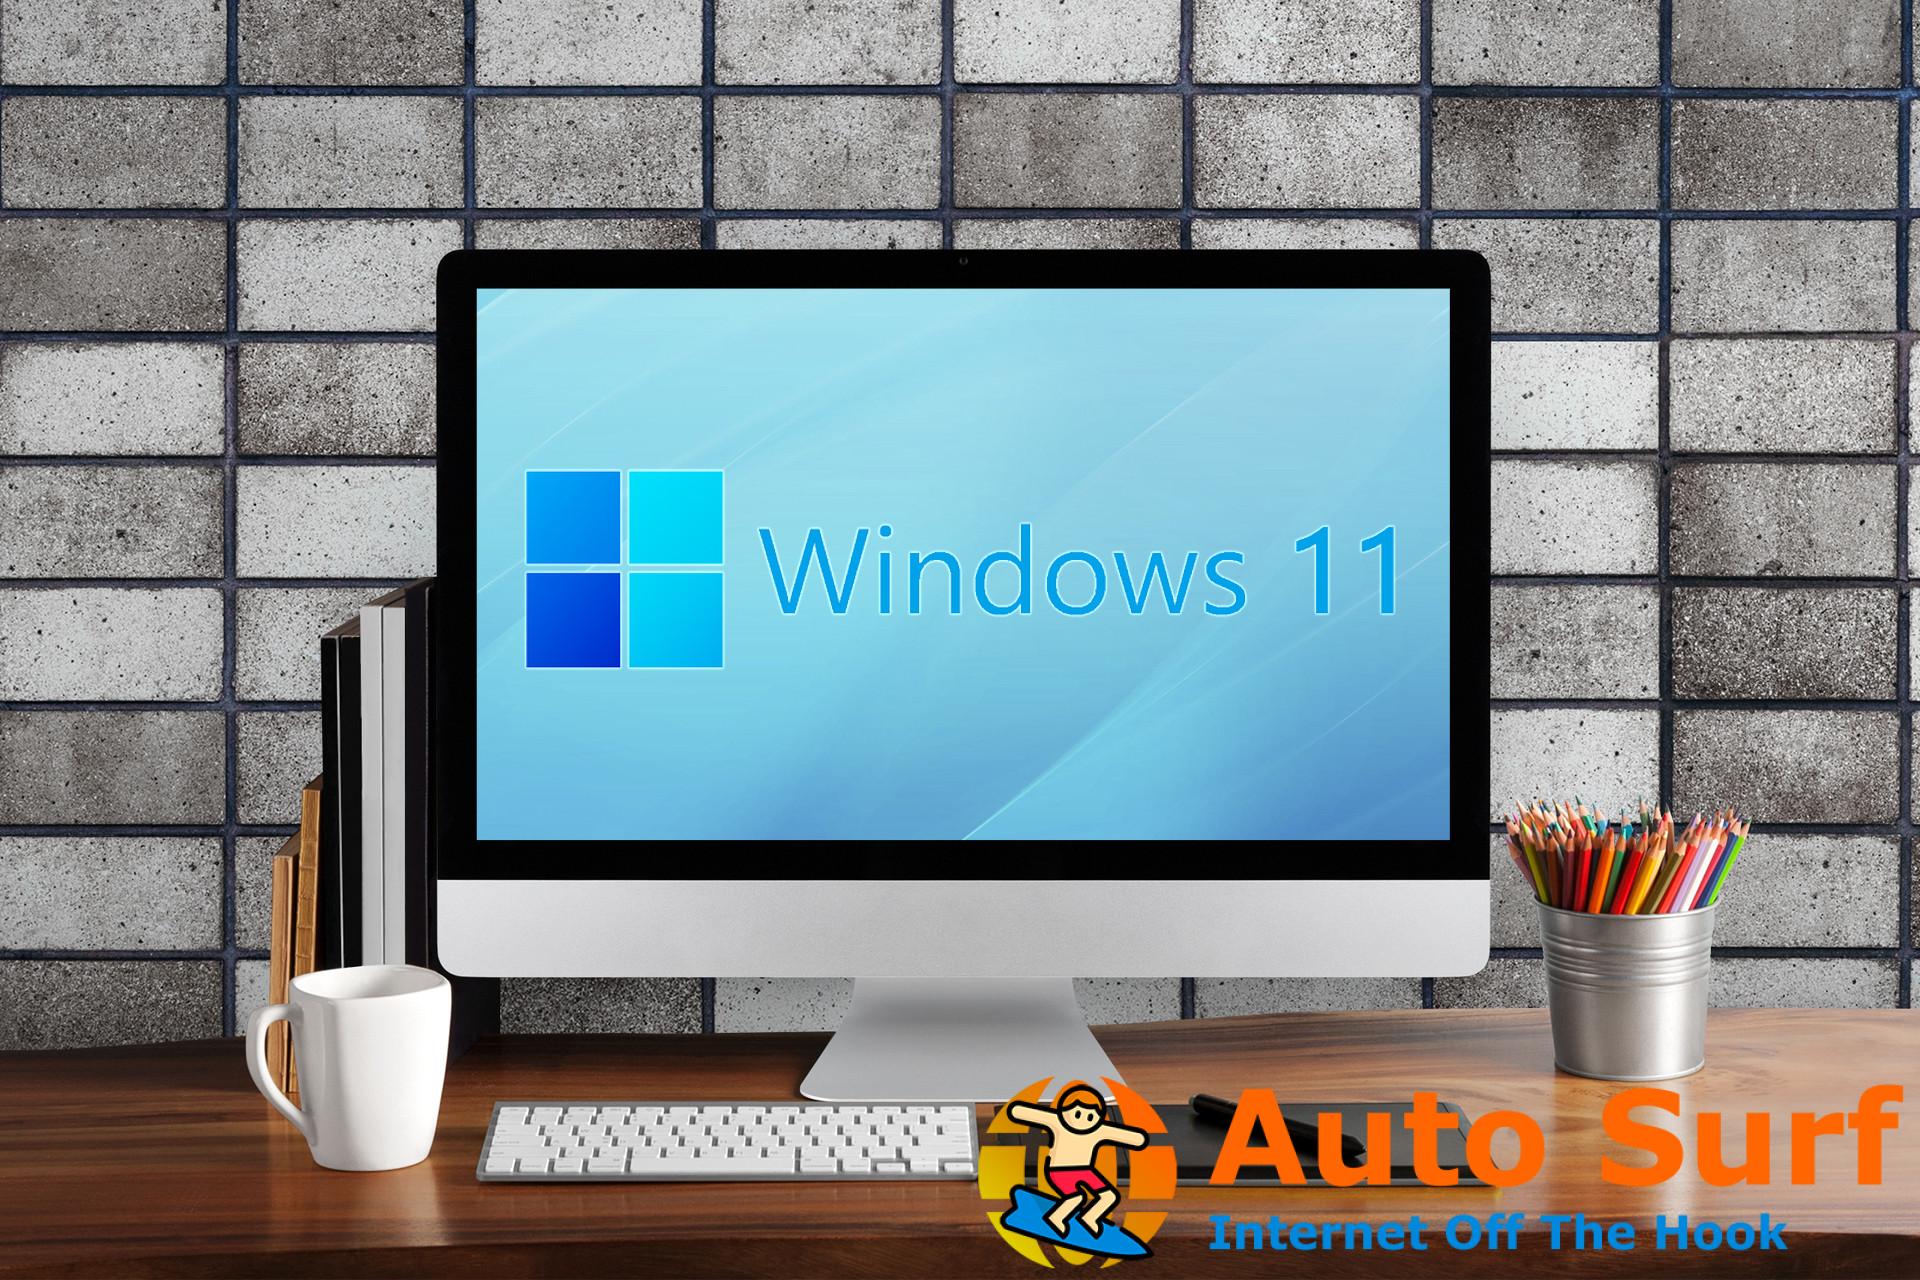 Restablecer Windows 11 a su configuración de fábrica